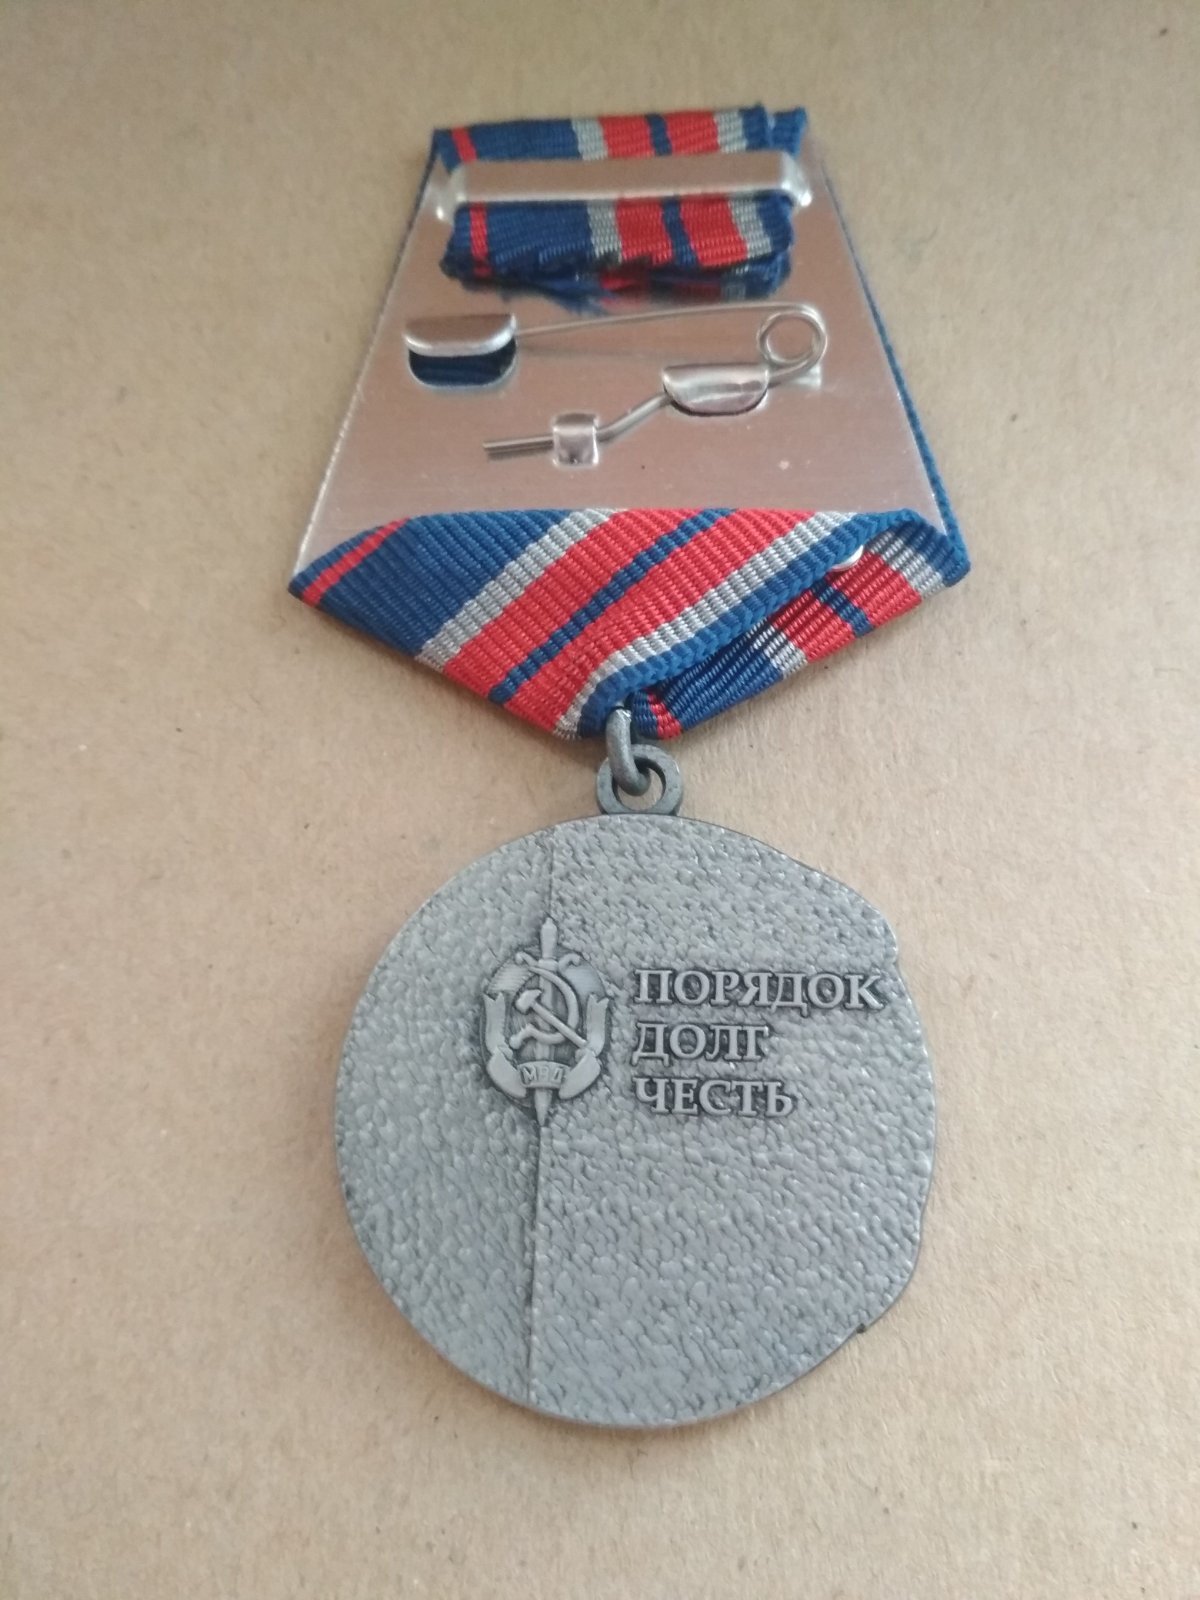 Медаль "Ветеран милиции", "Порядок, долг, честь"